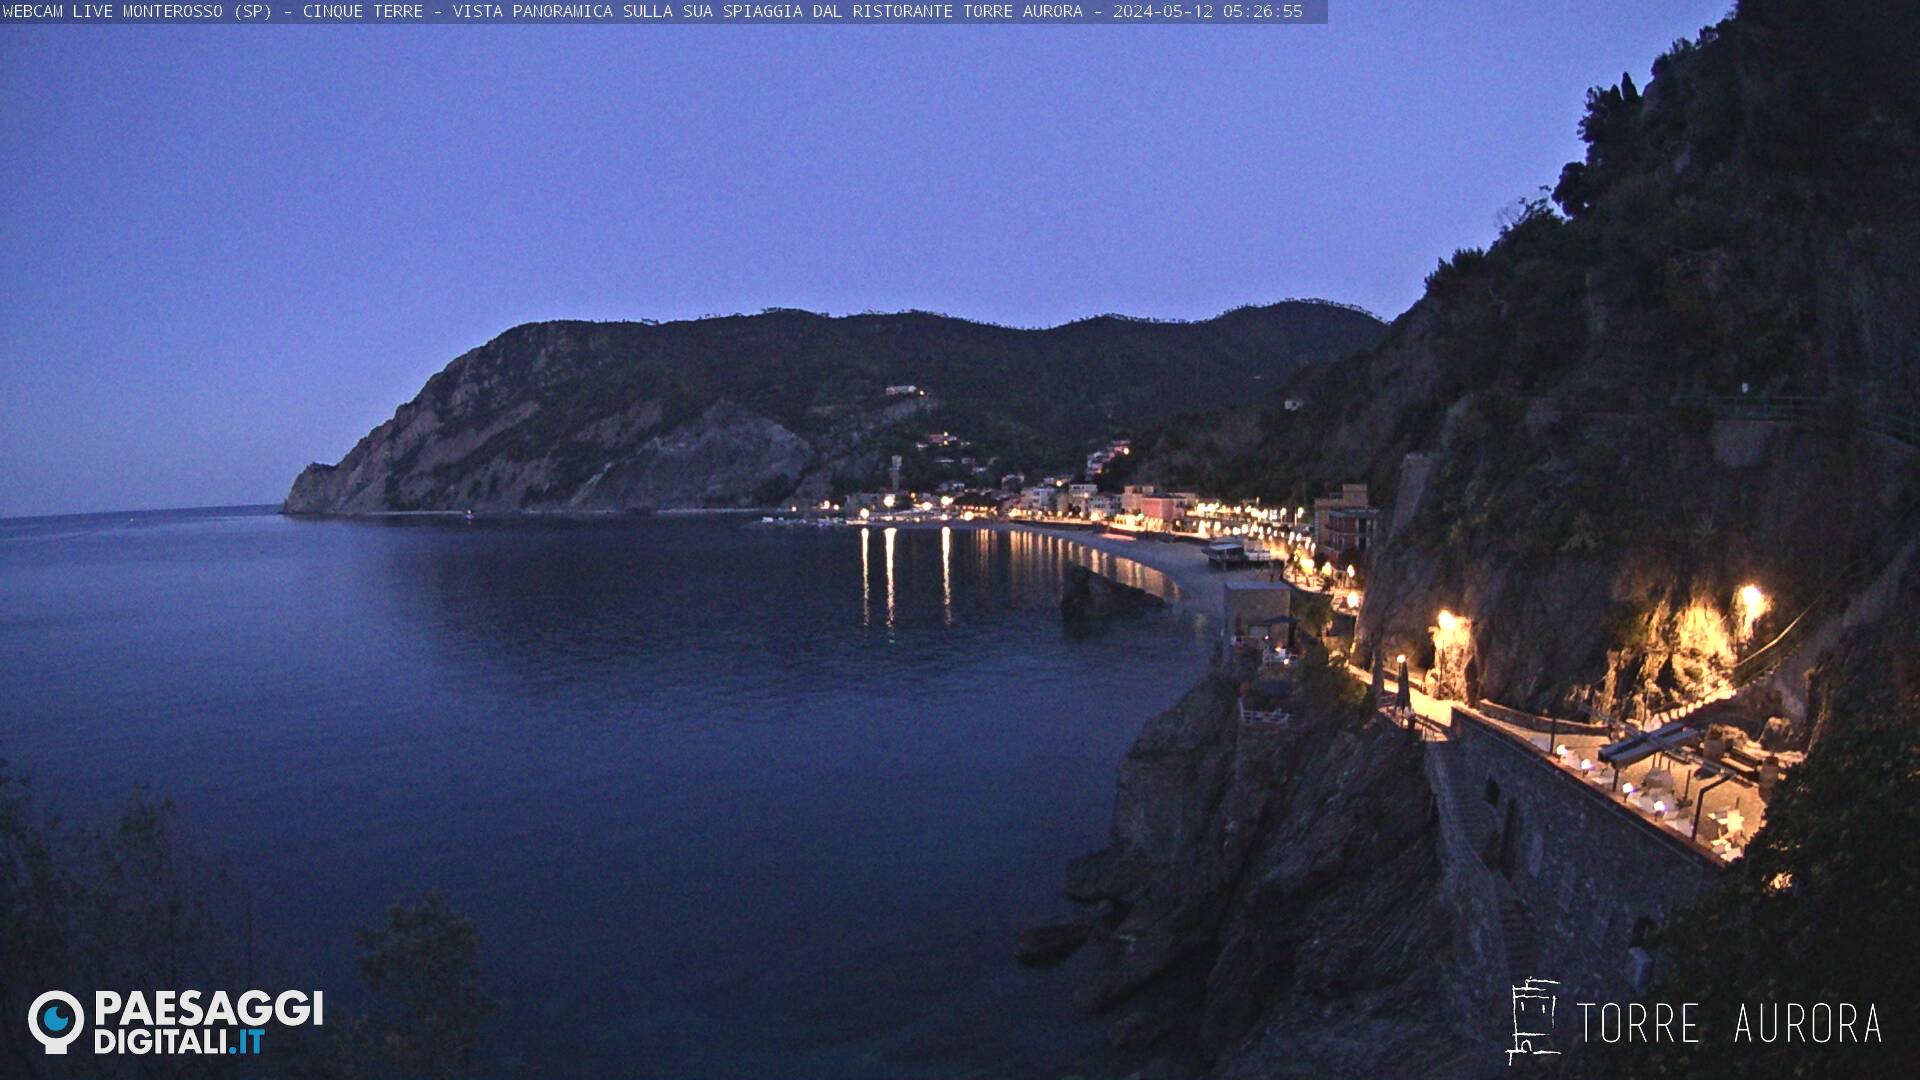 Monterosso al Mare (Cinque Terre) Je. 05:28